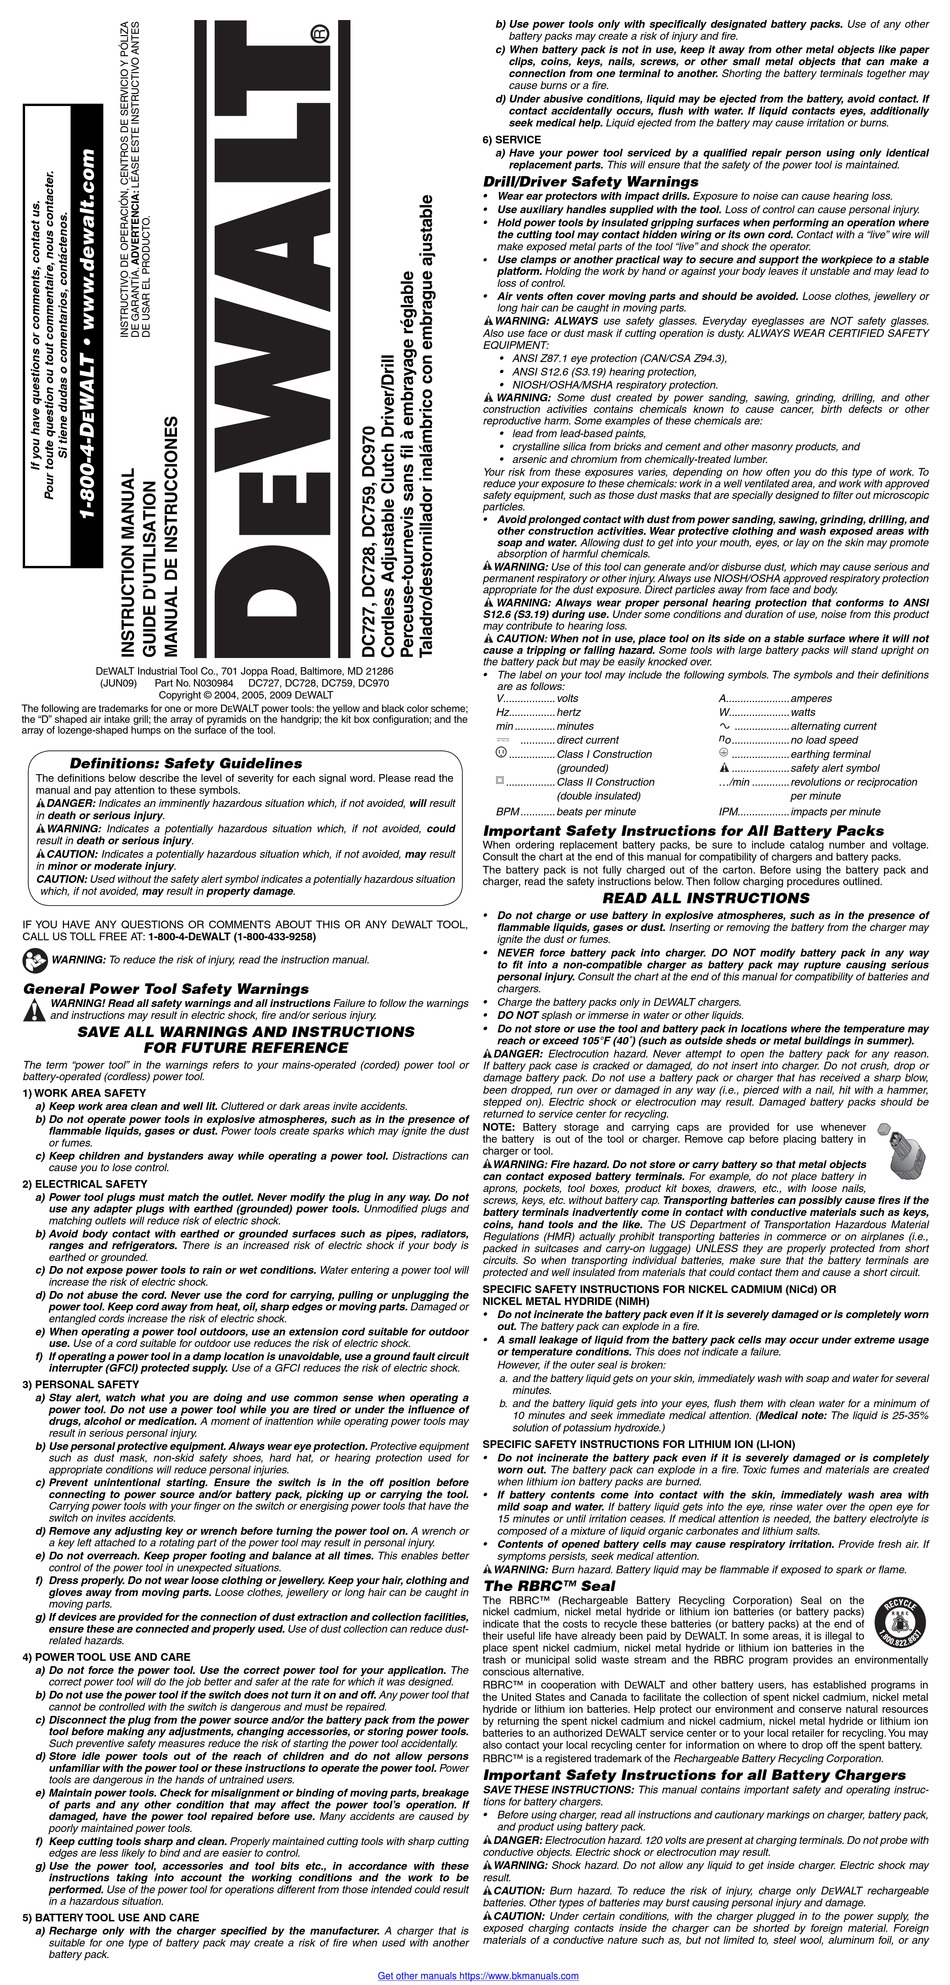 DEWALT DC728 INSTRUCTION MANUAL Pdf Download | ManualsLib